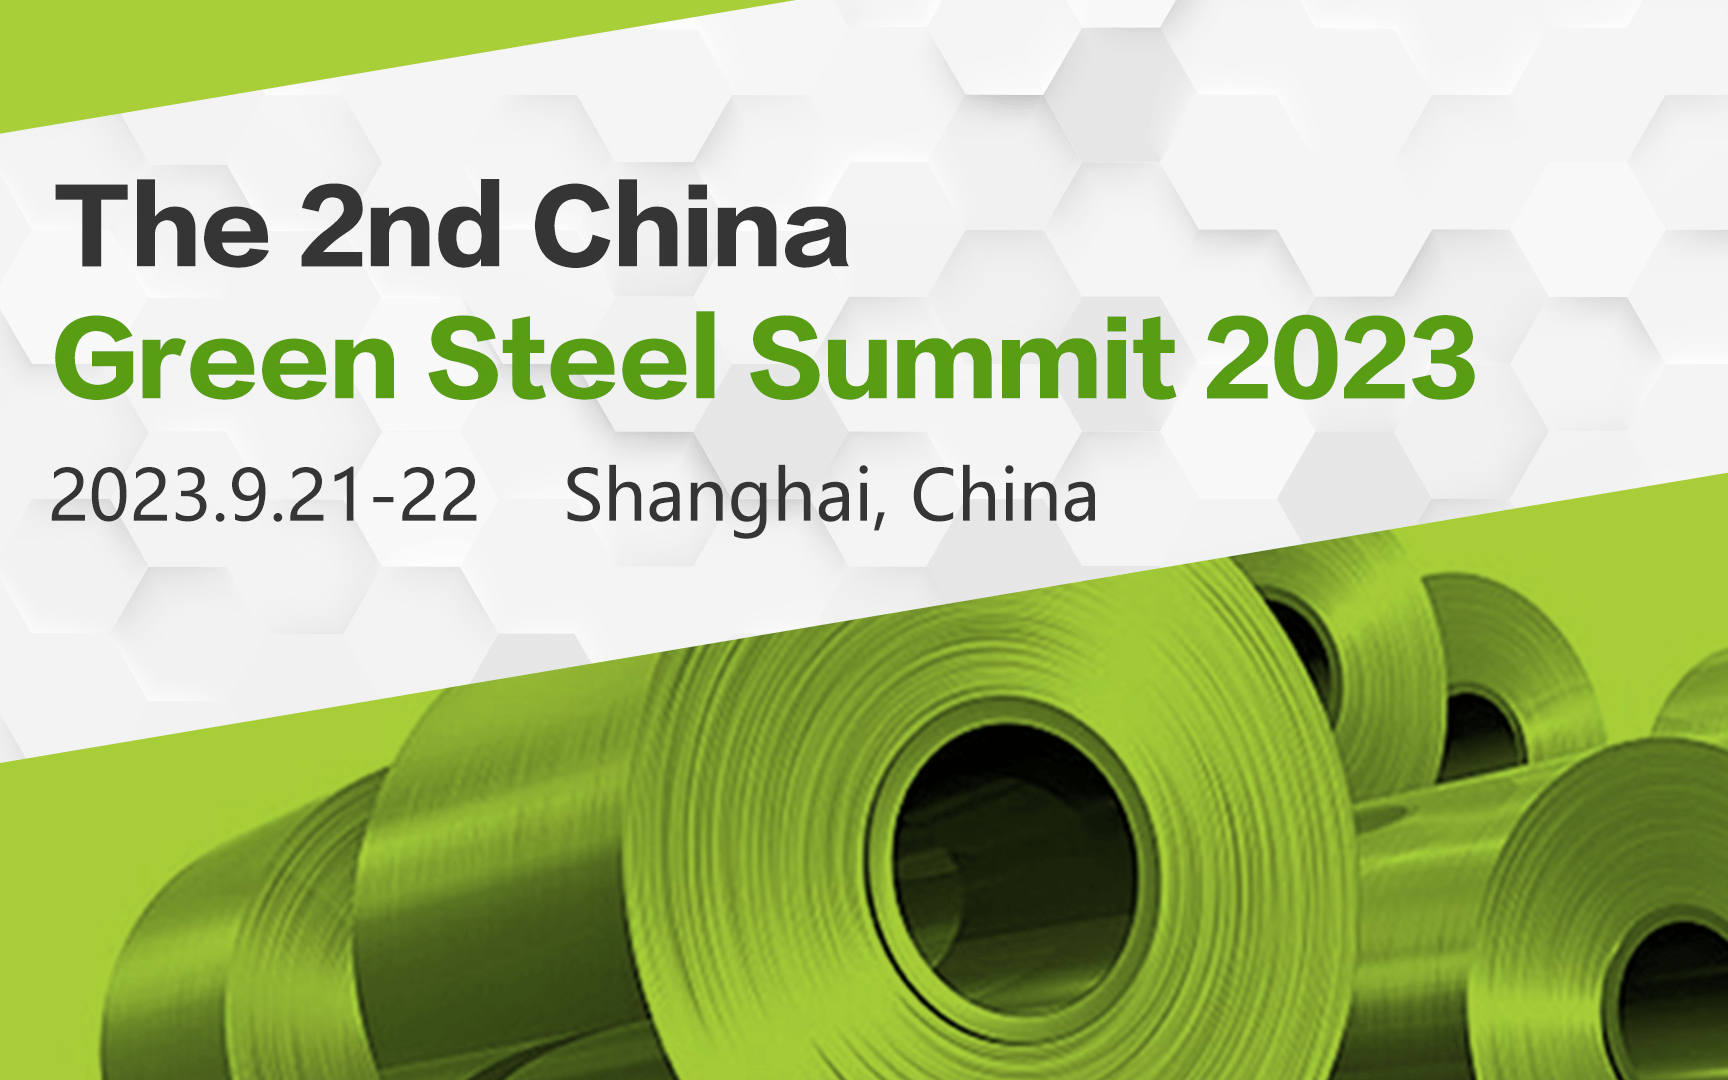 2023第二届中国绿色钢铁国际峰会